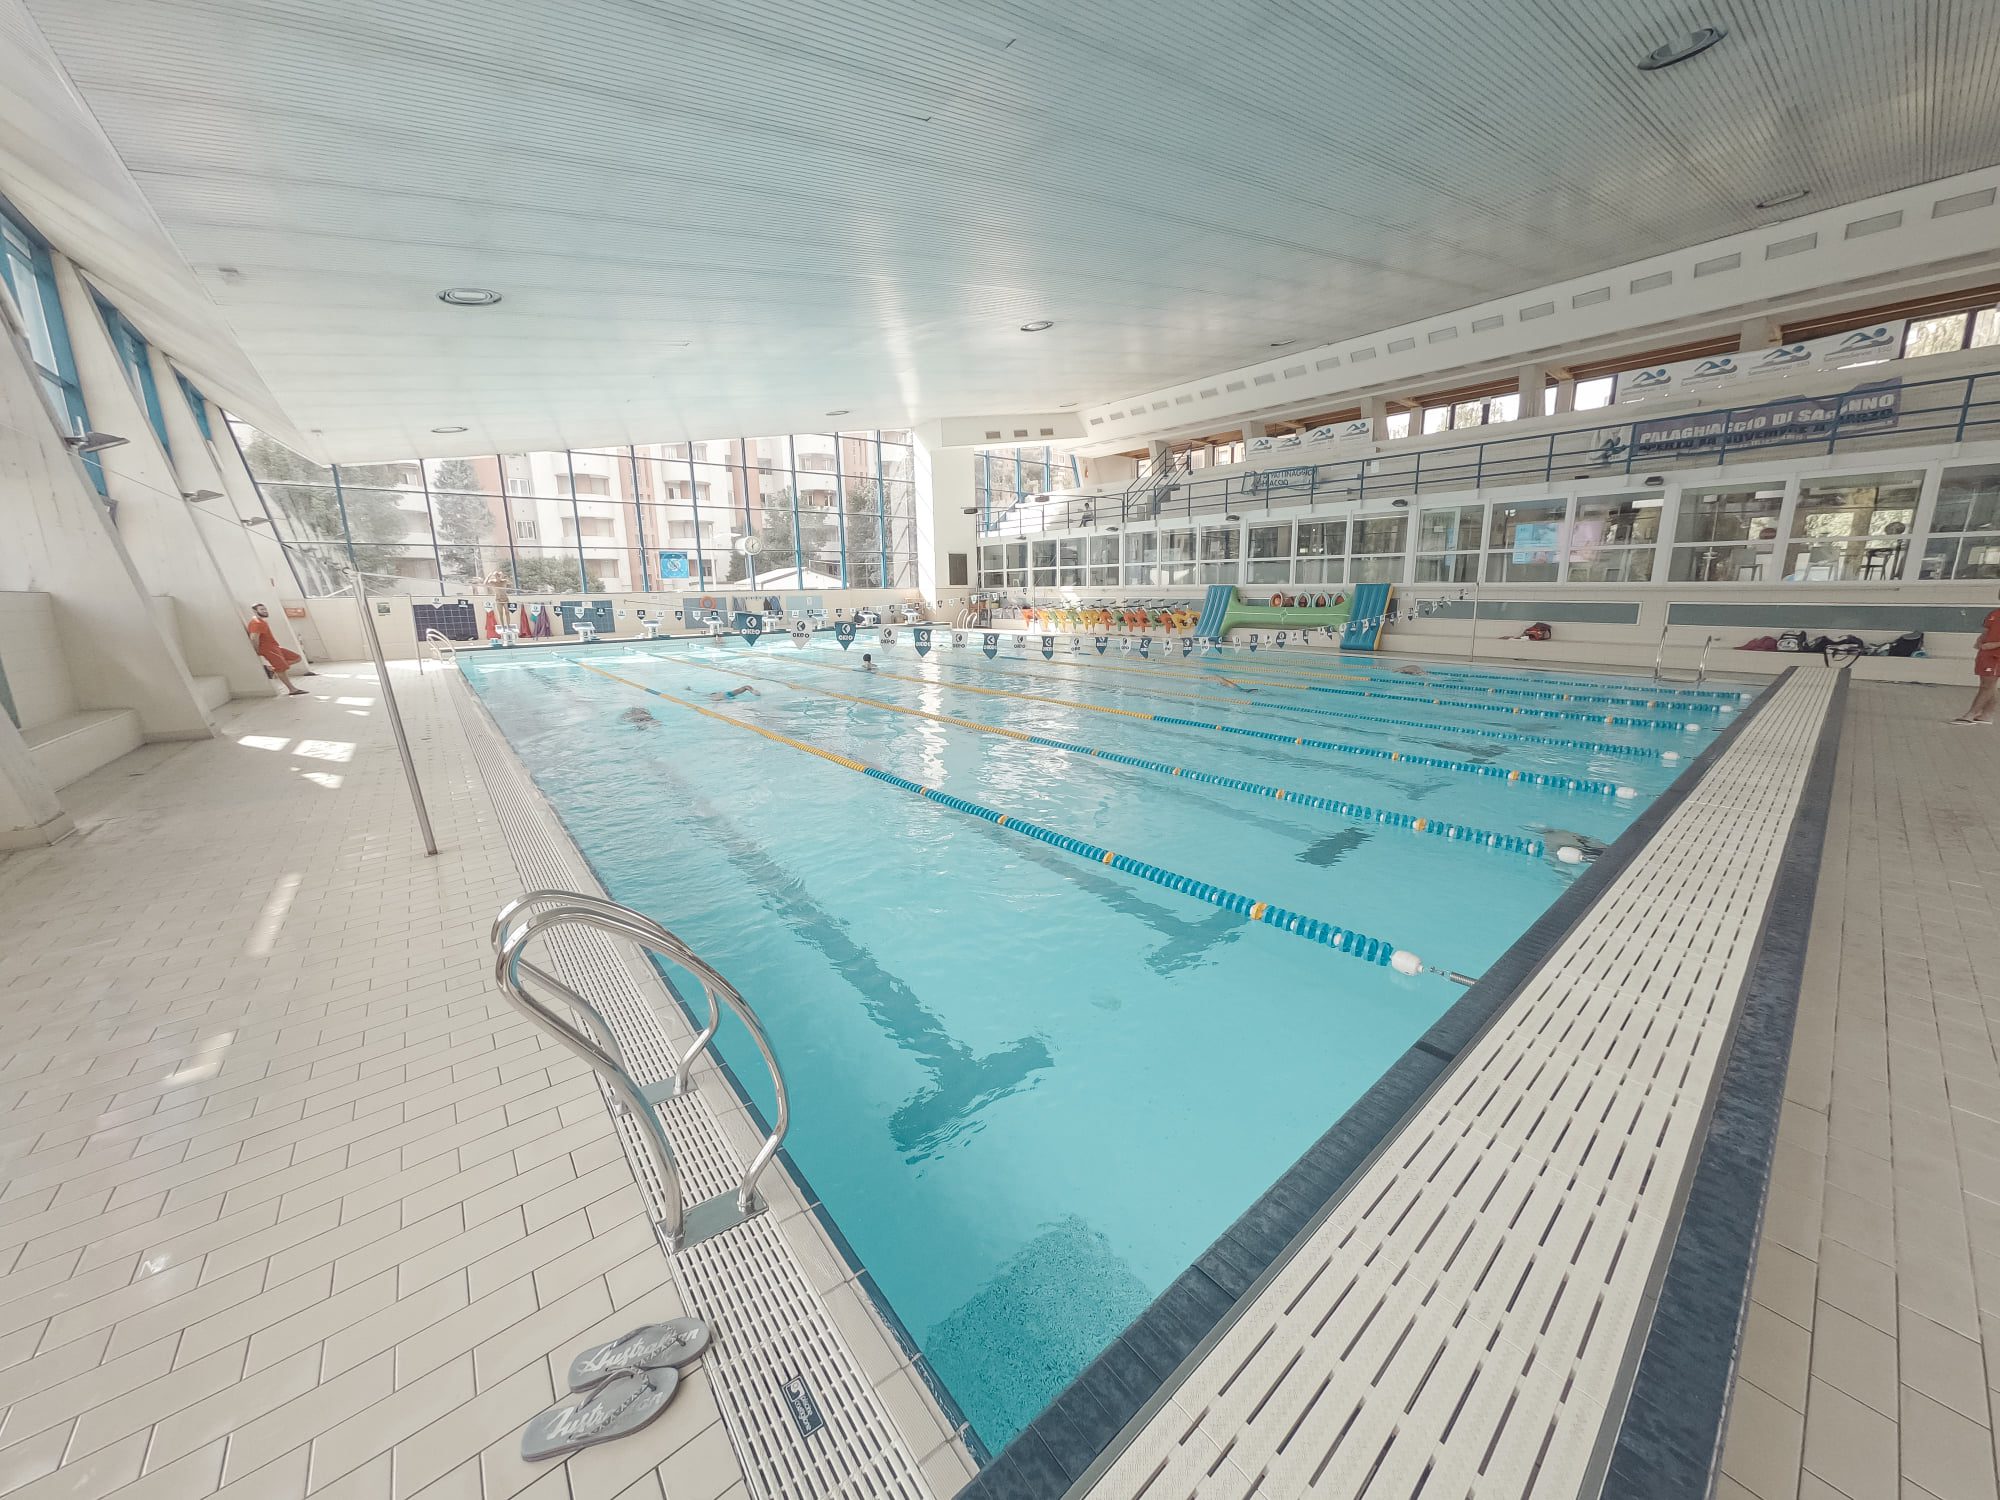 Nuoto e tanto fitness in acqua (anche con eventi speciali), così riparte la piscina di Saronno